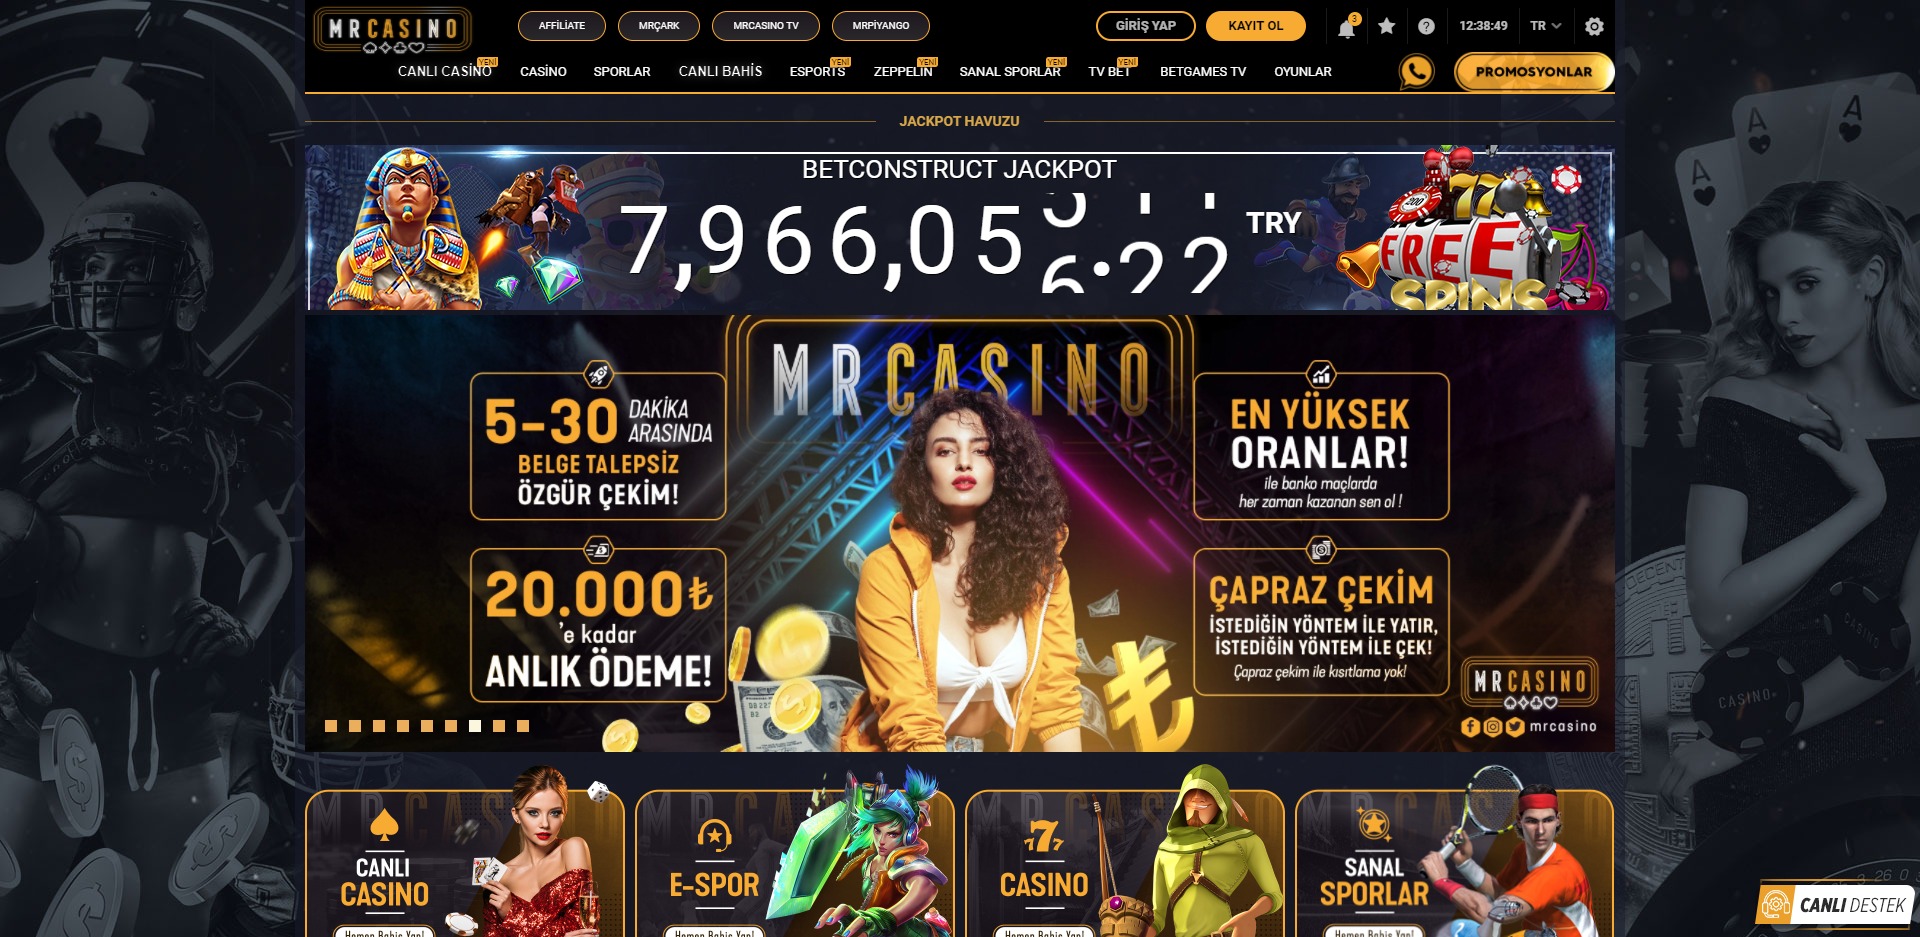 kazansana Casino Mrcasino